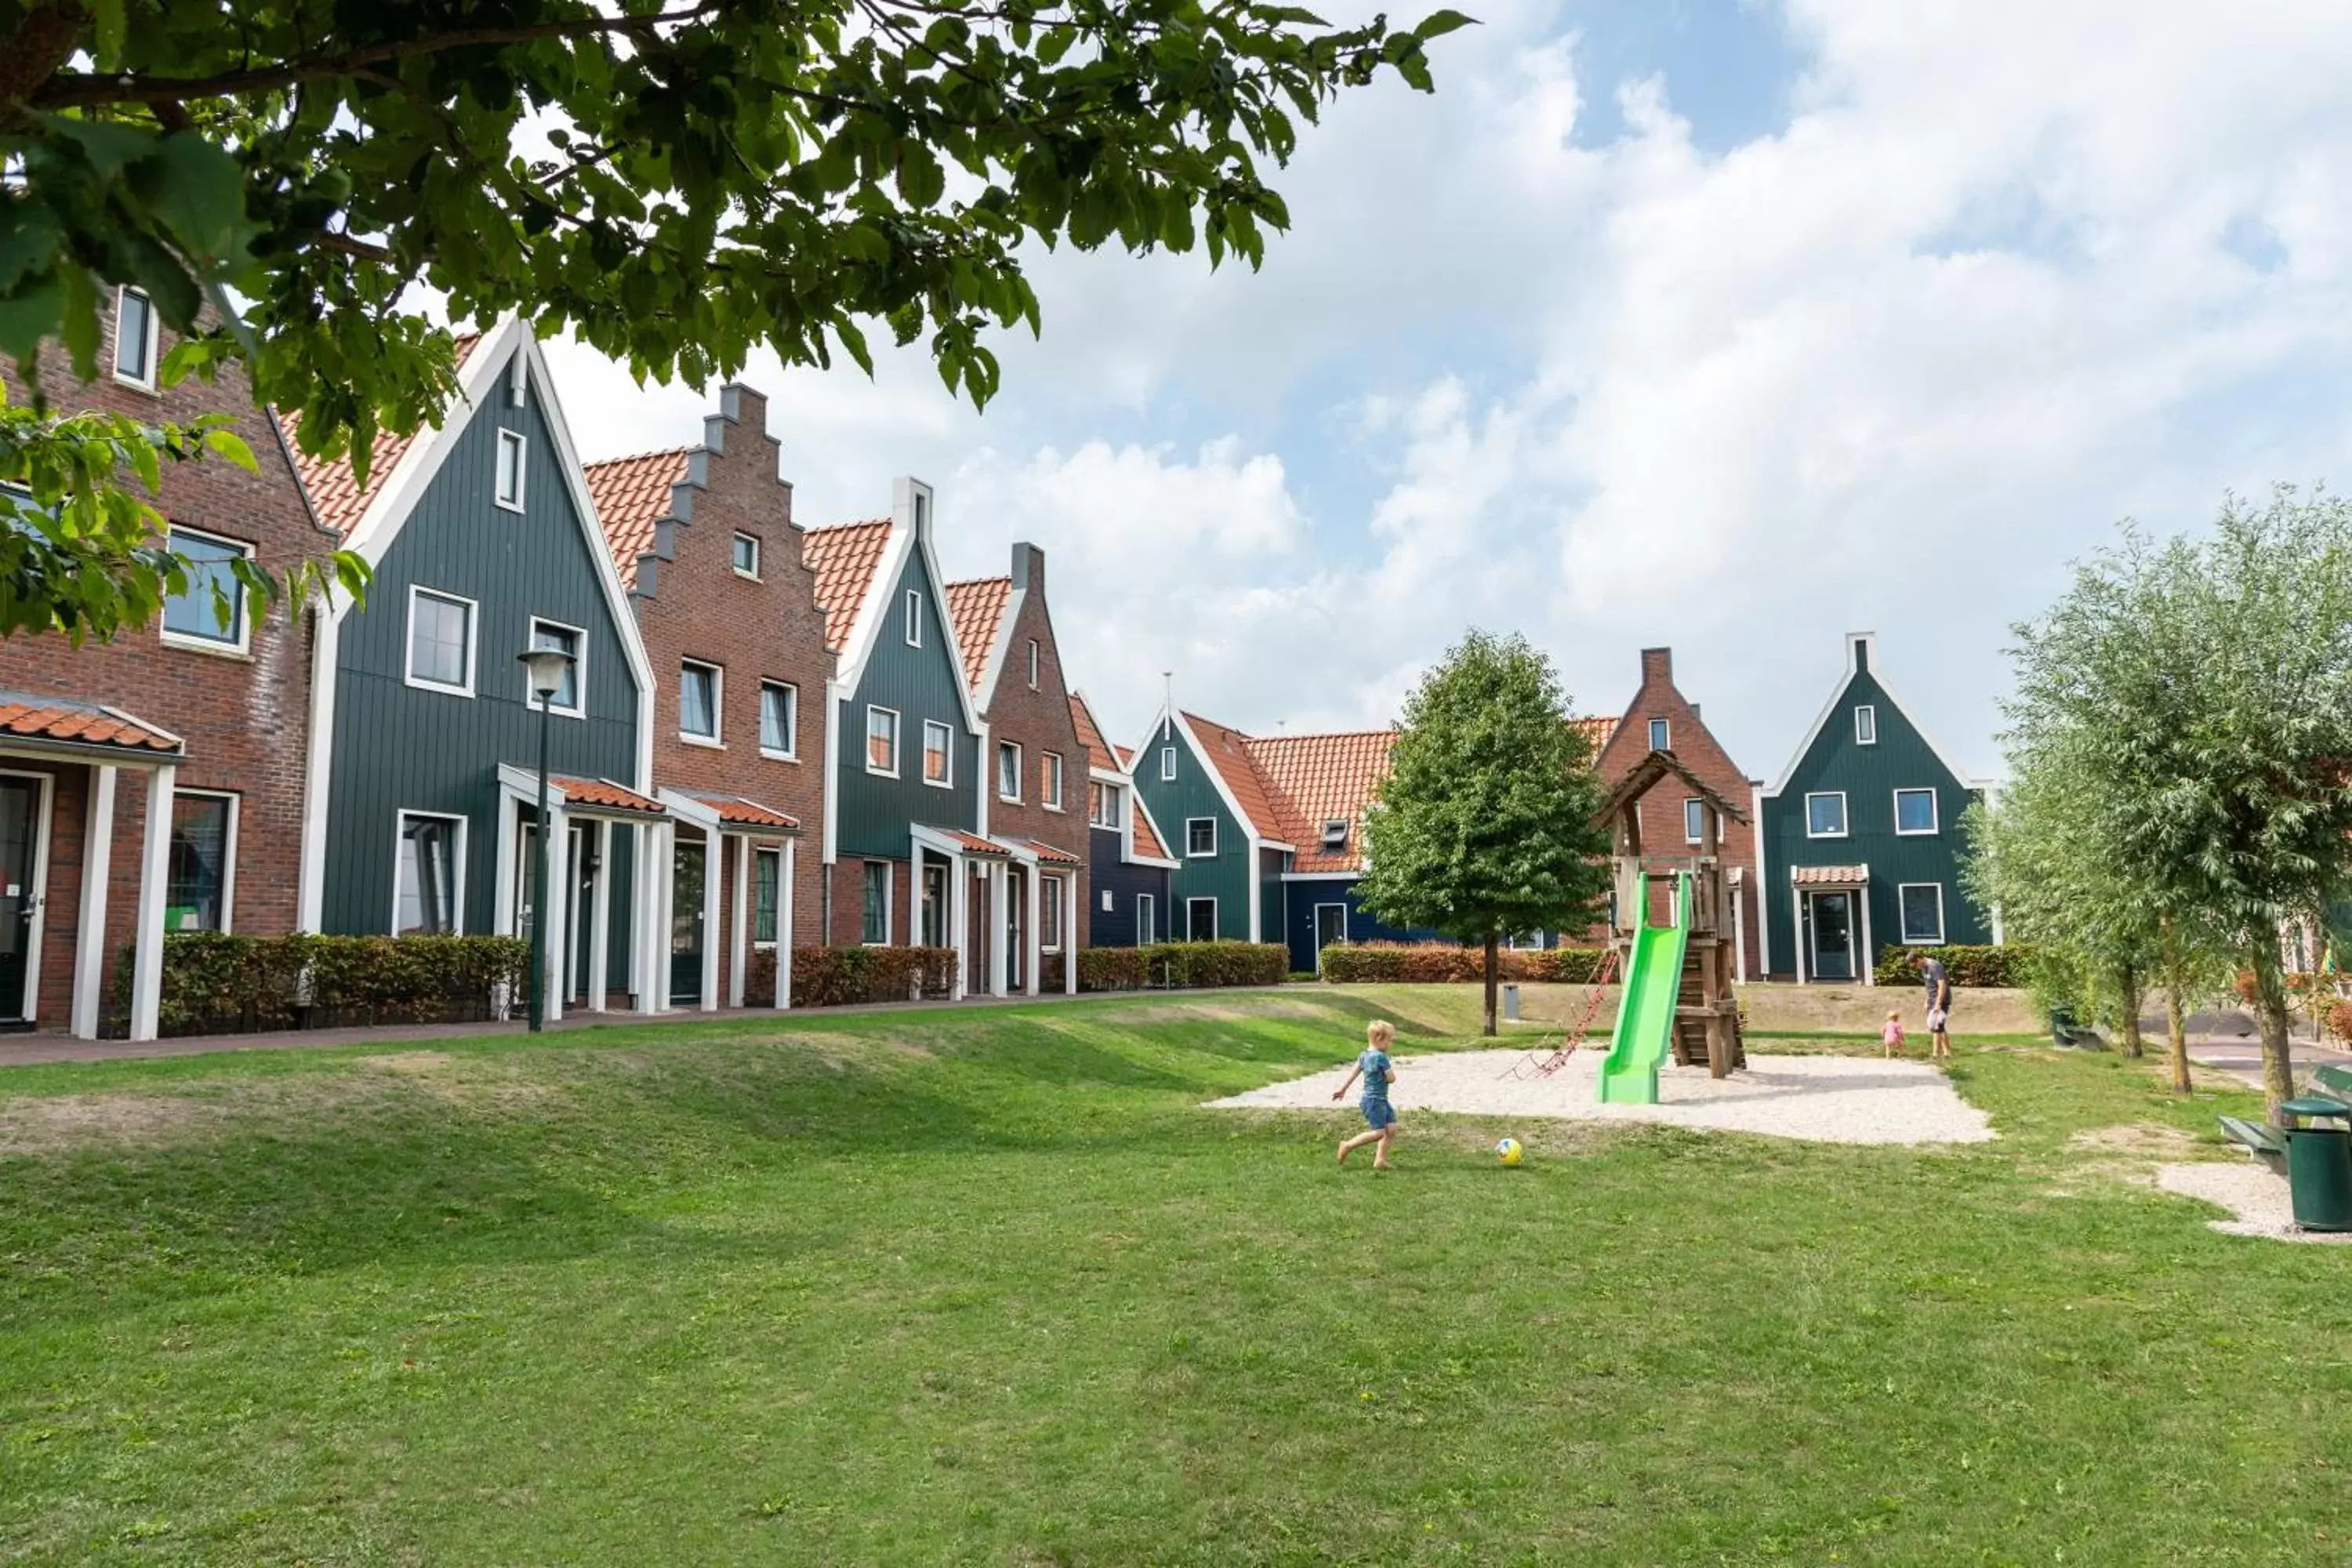 Children play ground, Property Building in Marinapark Volendam